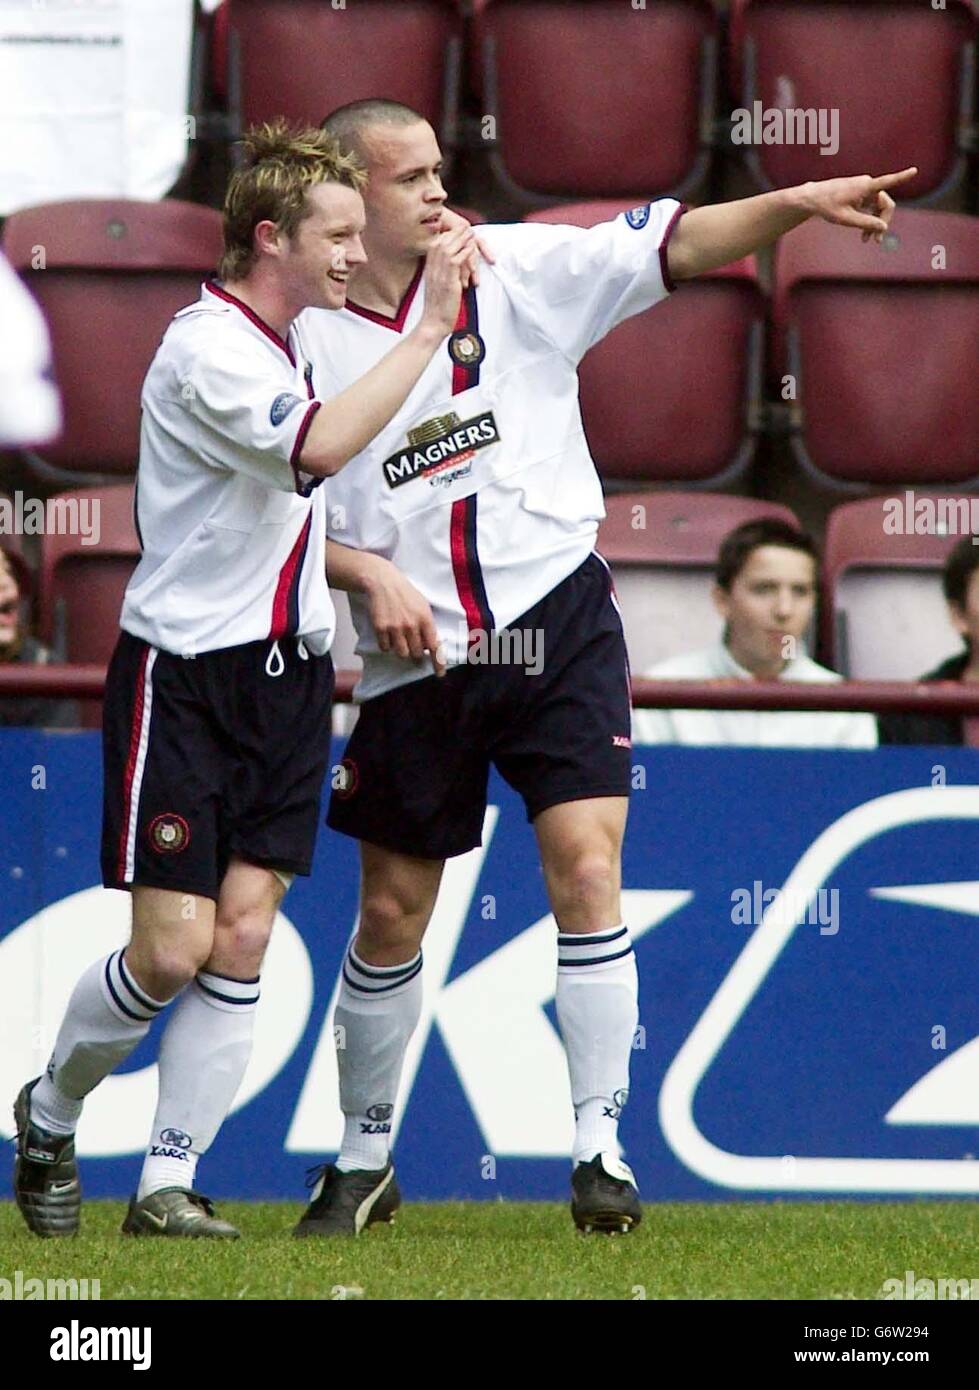 Steven milne (R) de Dundee celebra el marcador contra Hearts con su compañero de equipo Steven Robb durante el partido de la Liga Premier del Banco de Escocia en Tynecastle Park, Edimburgo, sábado 27 de marzo de 2004. Foto de stock